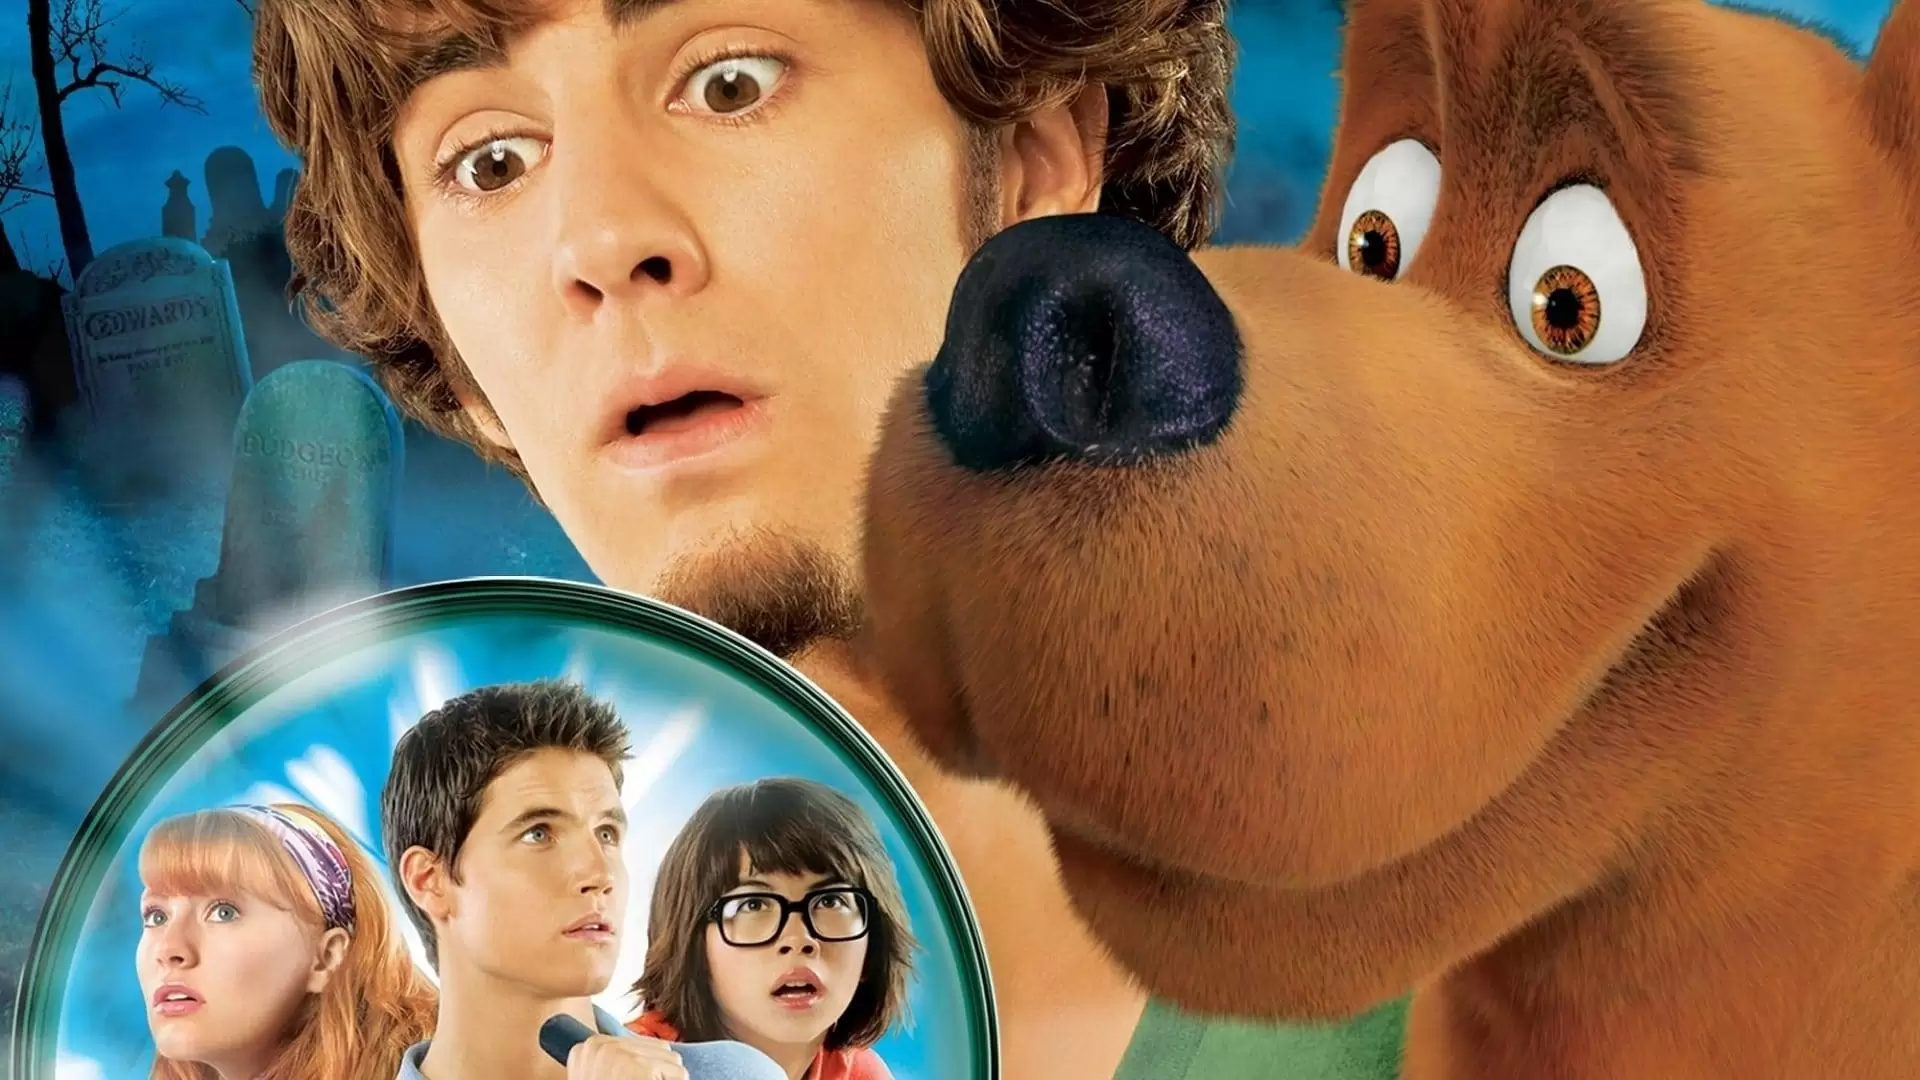 دانلود فیلم Scooby-Doo! The Mystery Begins 2009 (اسکو بی دوو! رمز و راز آغاز می شود) با تماشای آنلاین